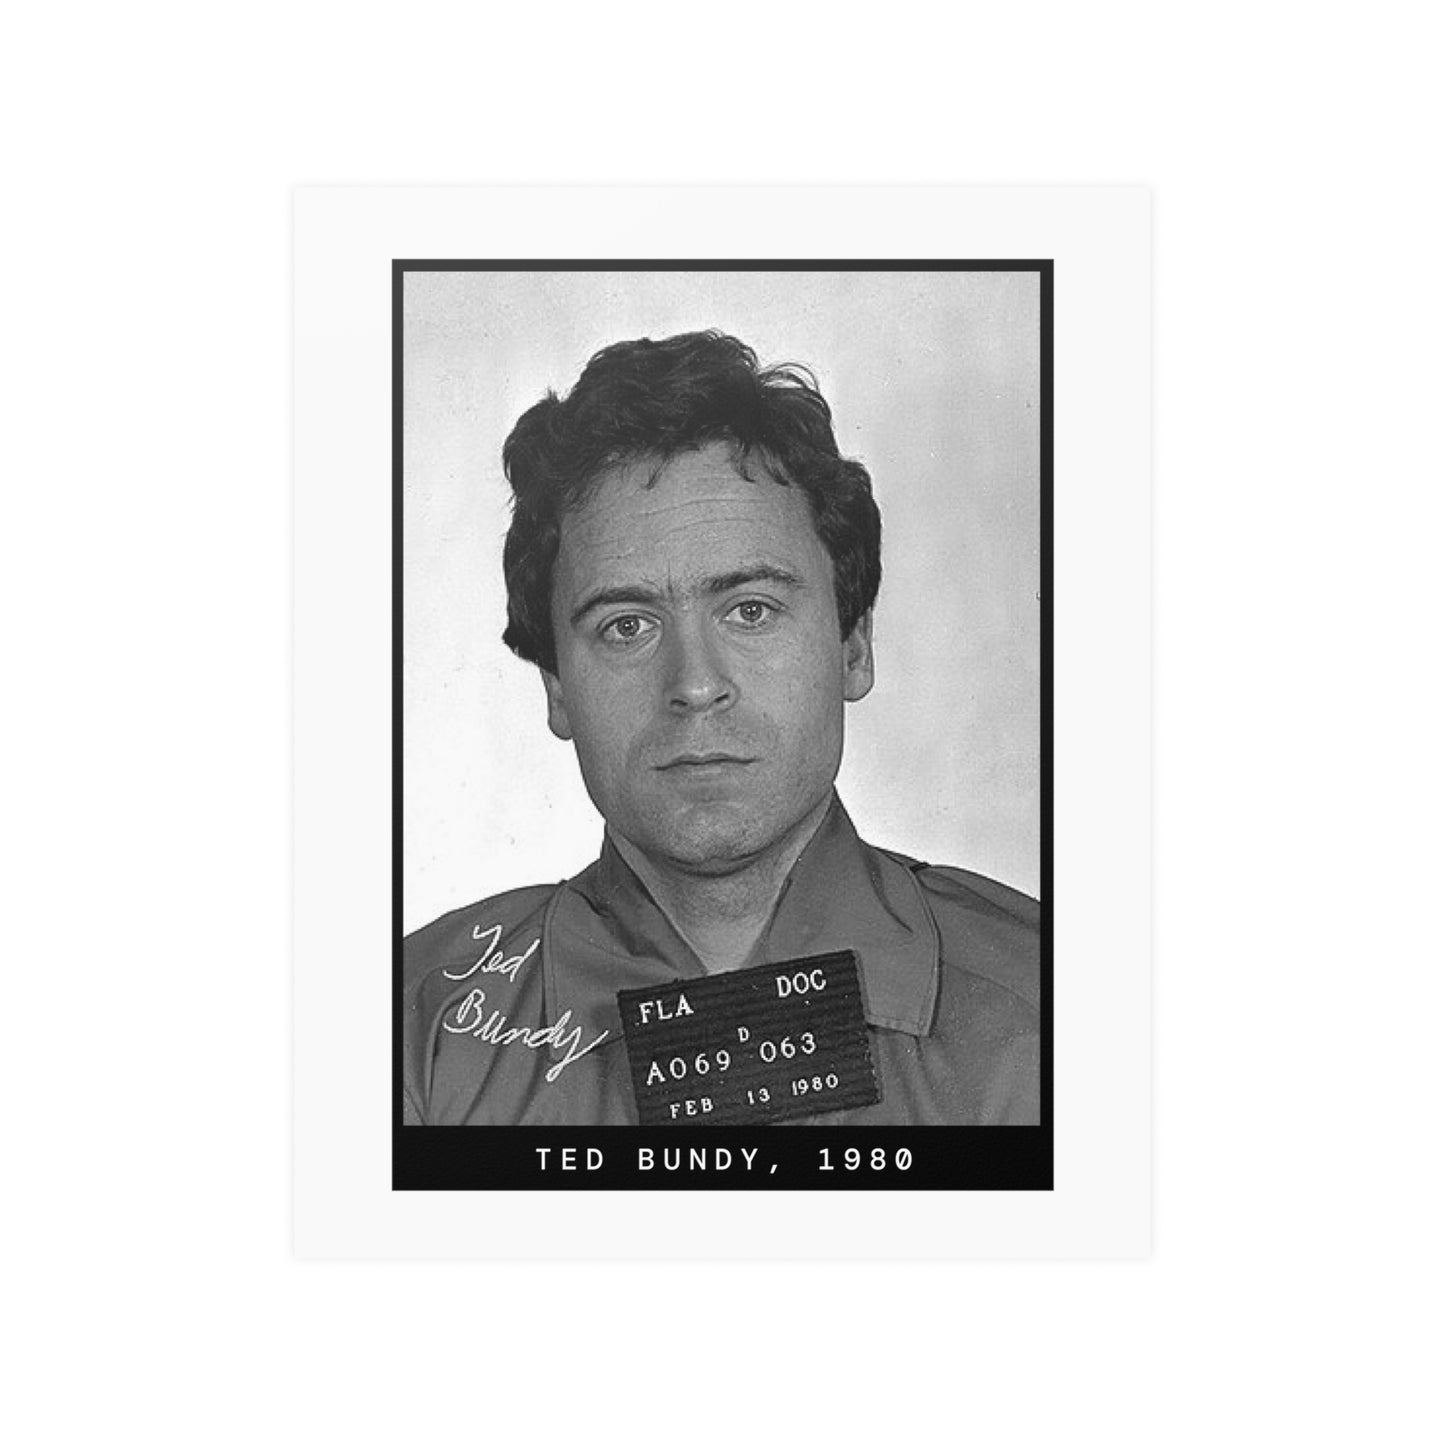 Ted Bundy, 1980 Serial Killer Mugshot Poster